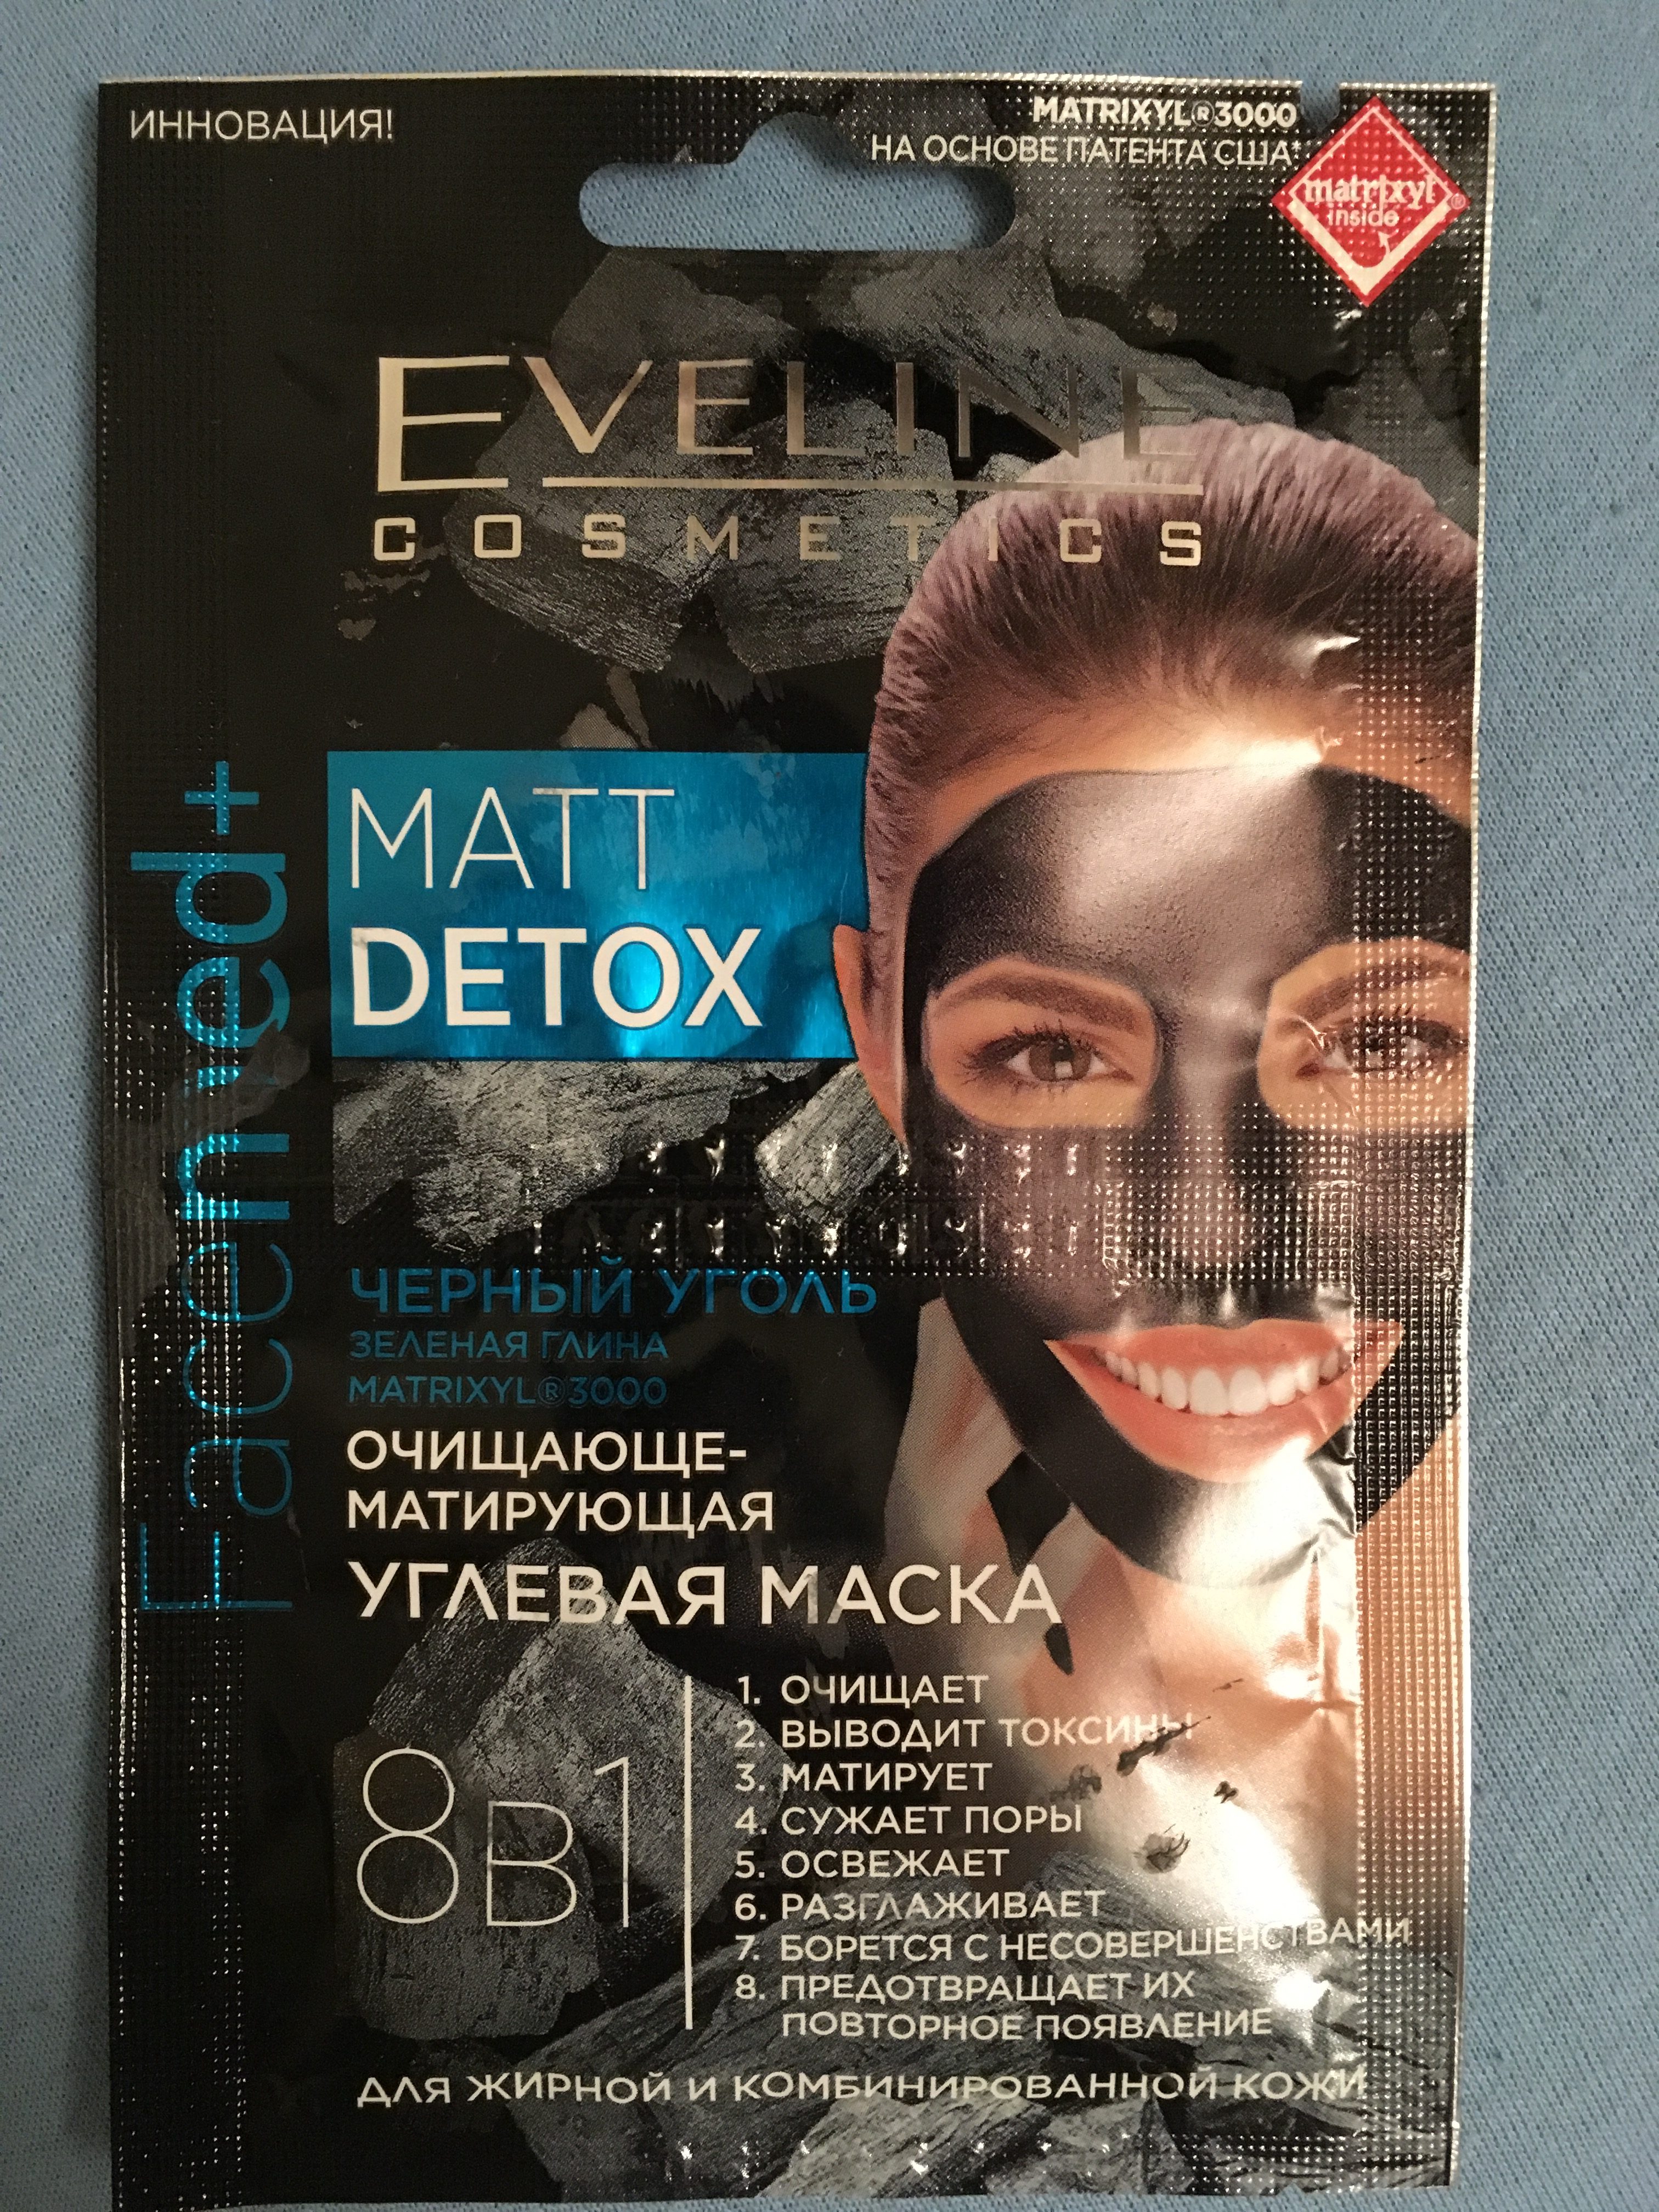 Маска для лица EVELINE Cosmetics MATT DETOX с черным углем. Отзыв